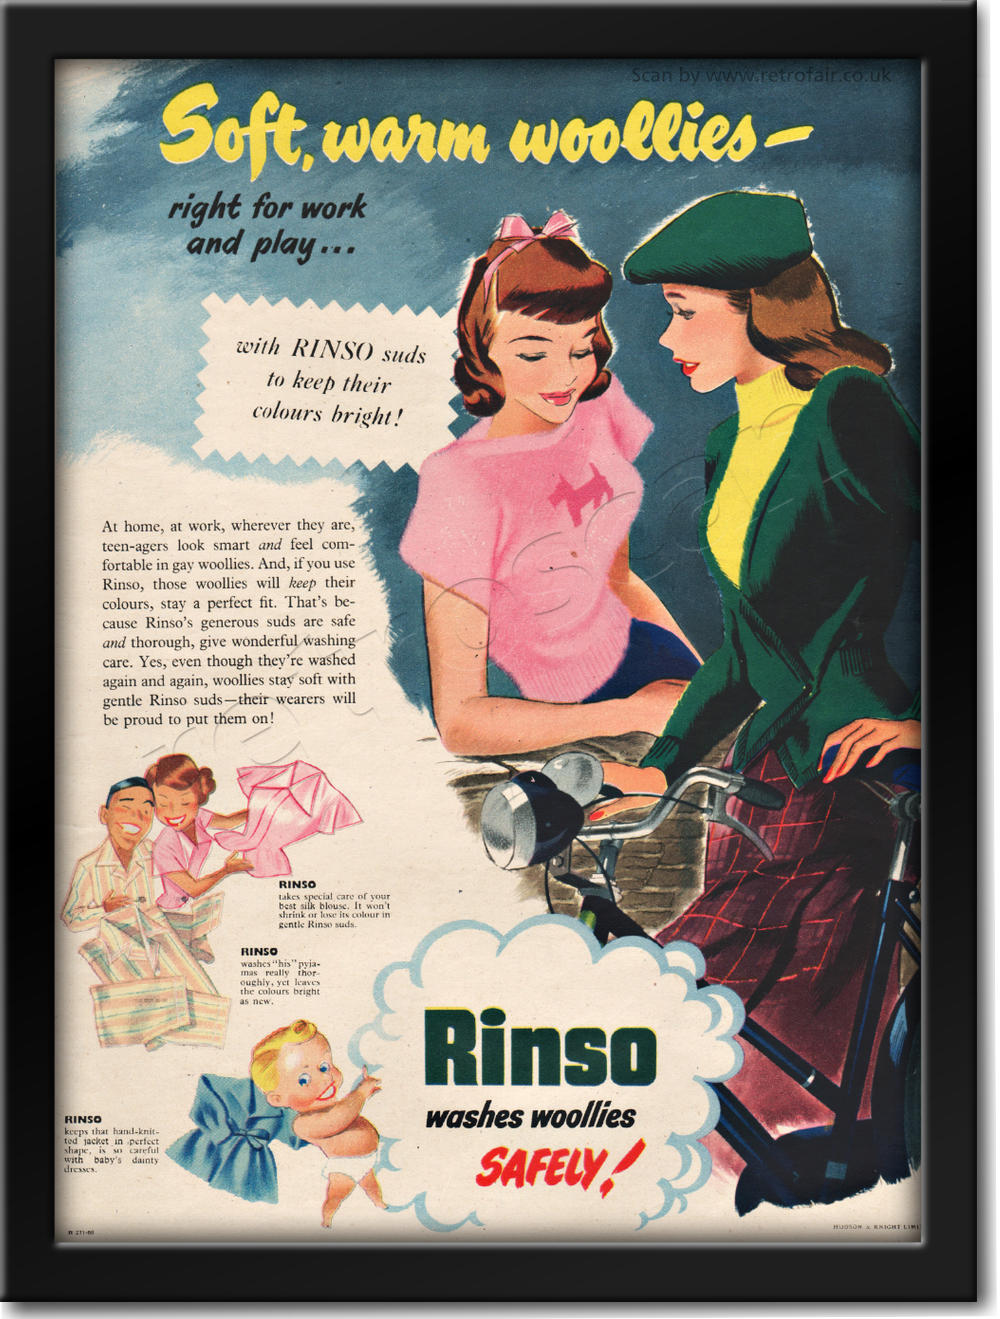 1950 vintage Rinso Washing Powder advert